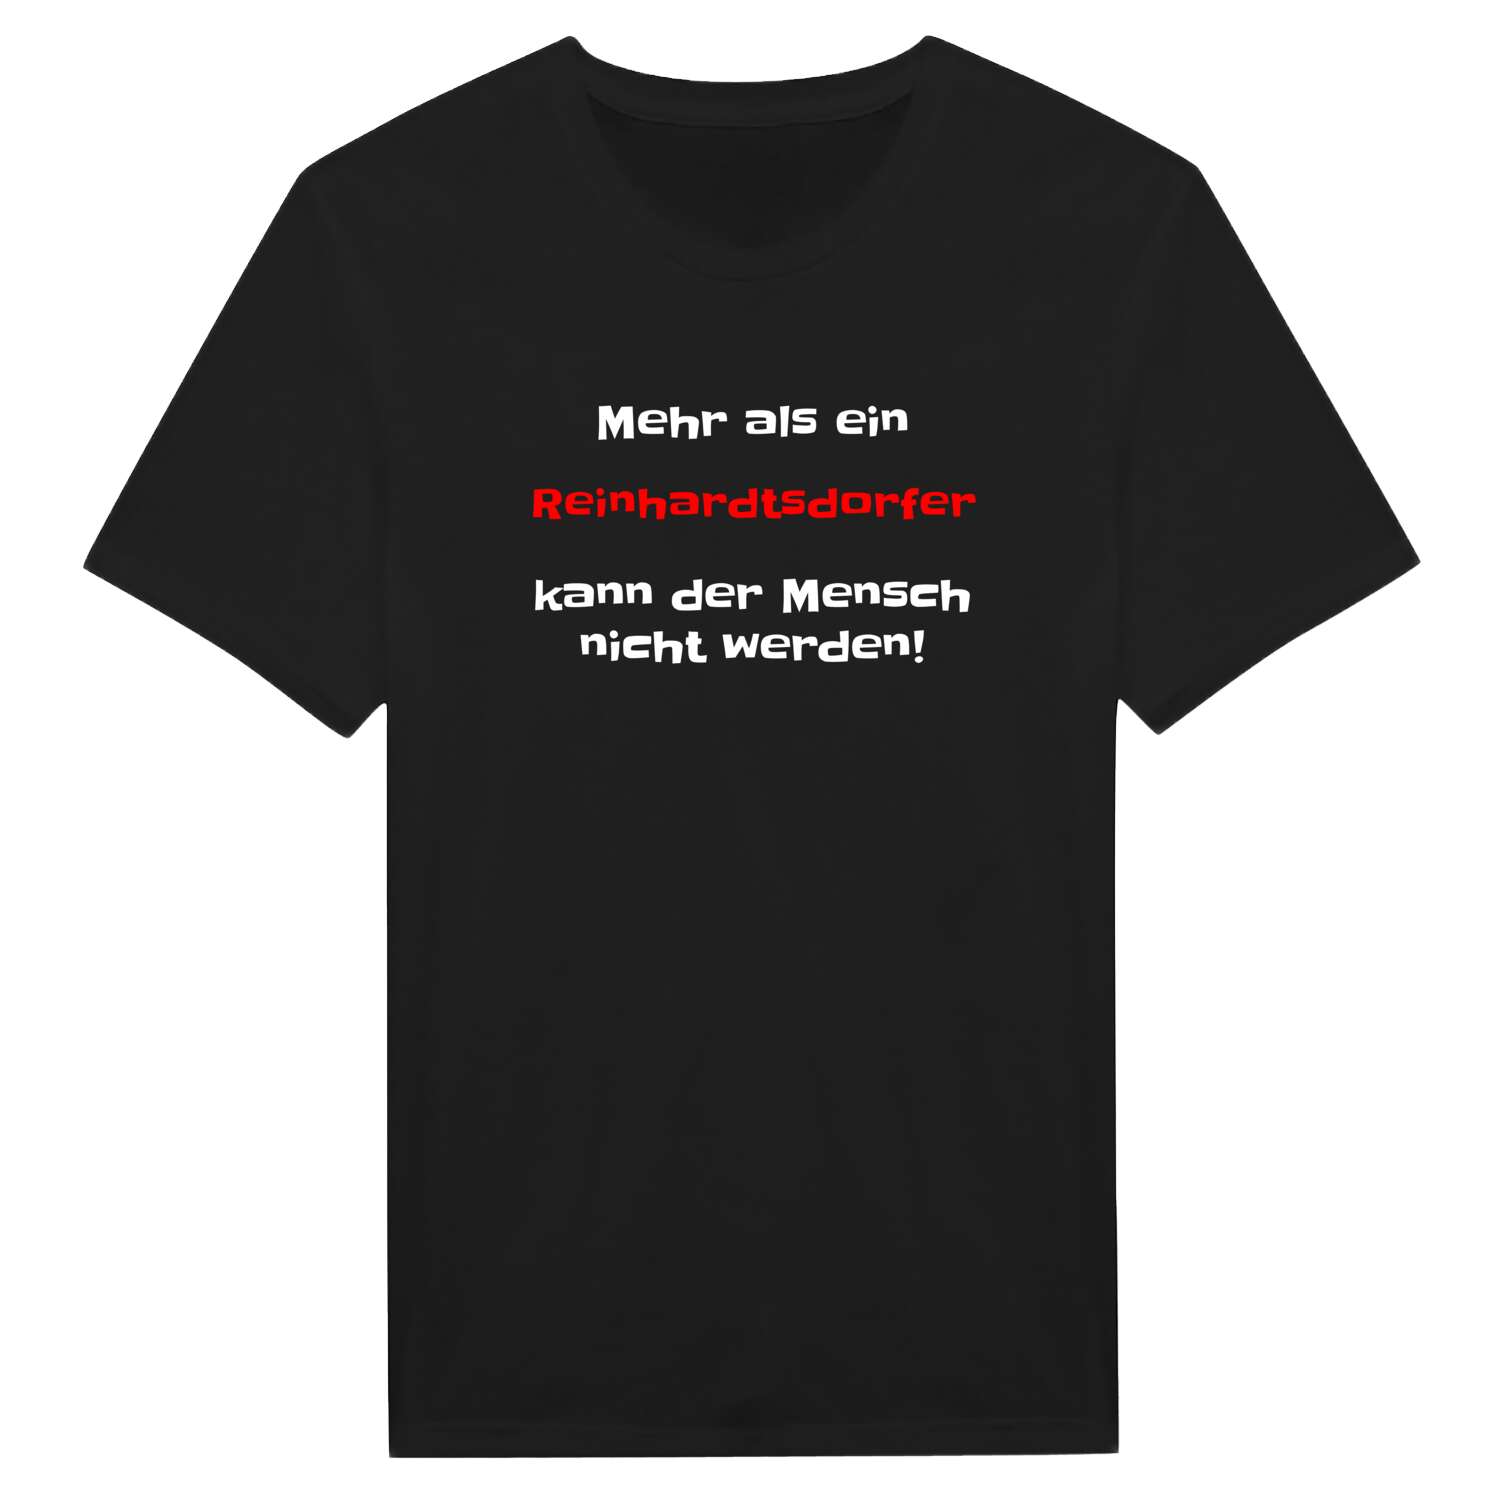 Reinhardtsdorf T-Shirt »Mehr als ein«